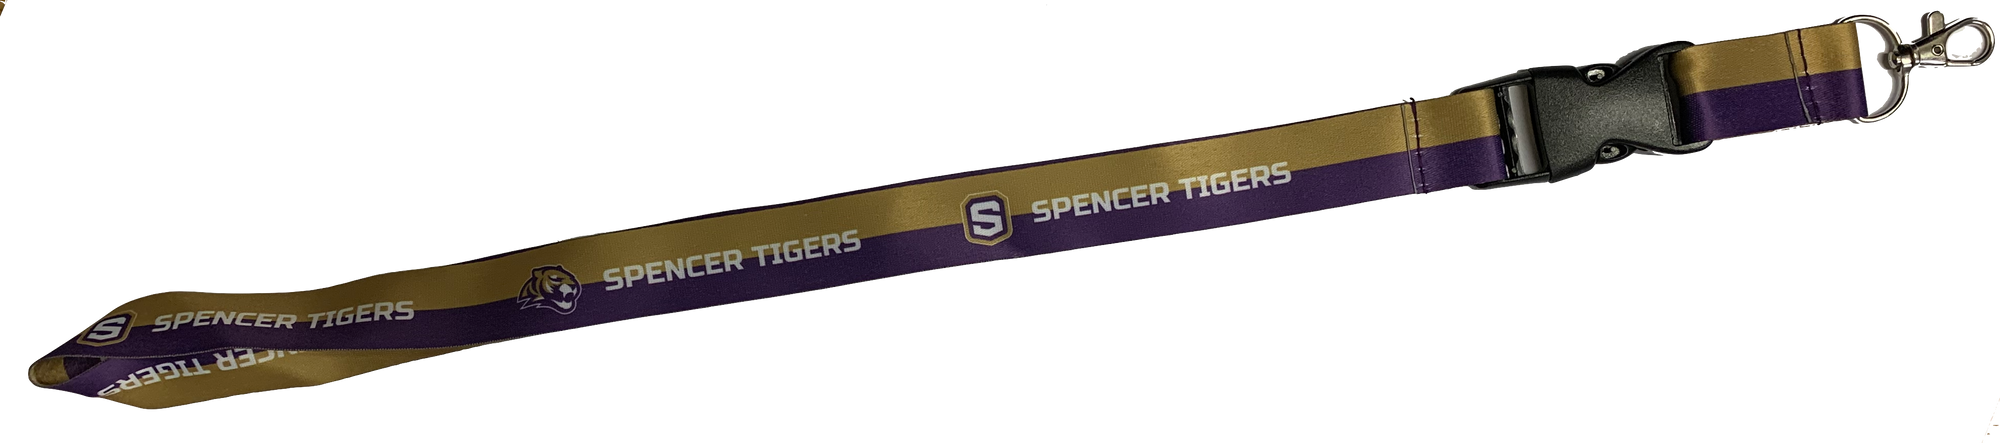 Spencer Tigers Lanyard - 1" x 16"